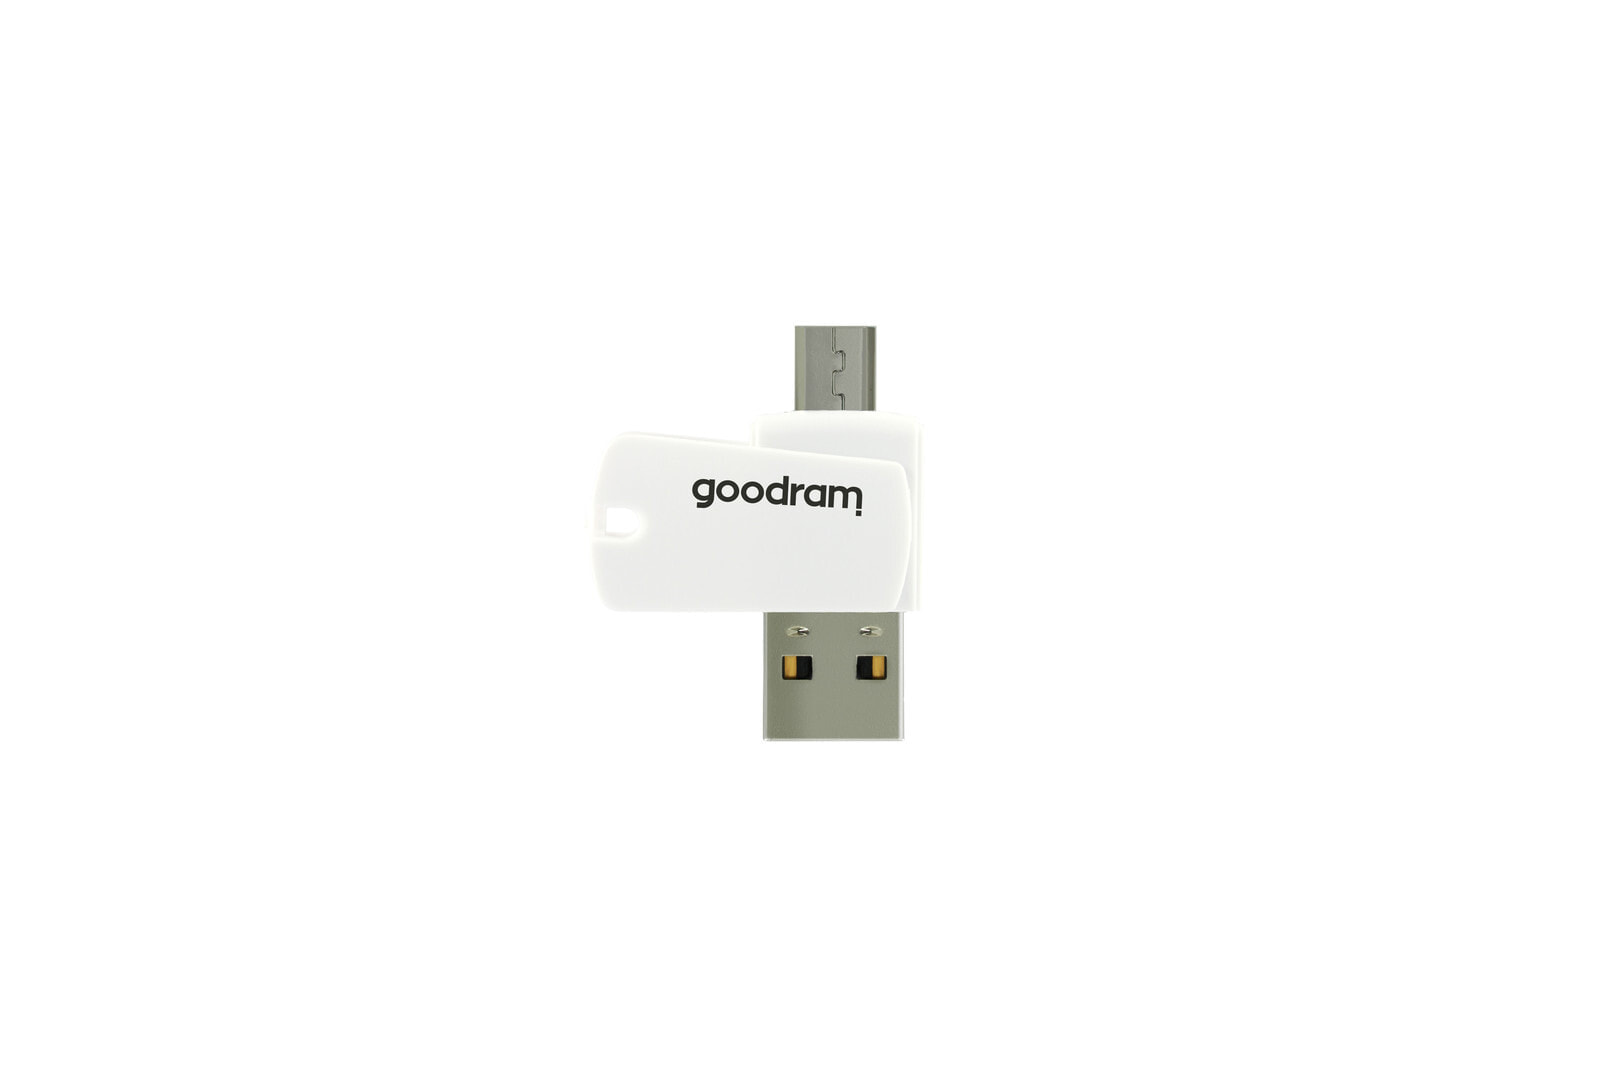 Устройство для чтения карт памяти GoodRam Wilk Elektronik S.A. Goodram AO20-MW01R11, MicroSD (TransFlash), White, USB 2.0/Micro-USB, 1 pc(s)